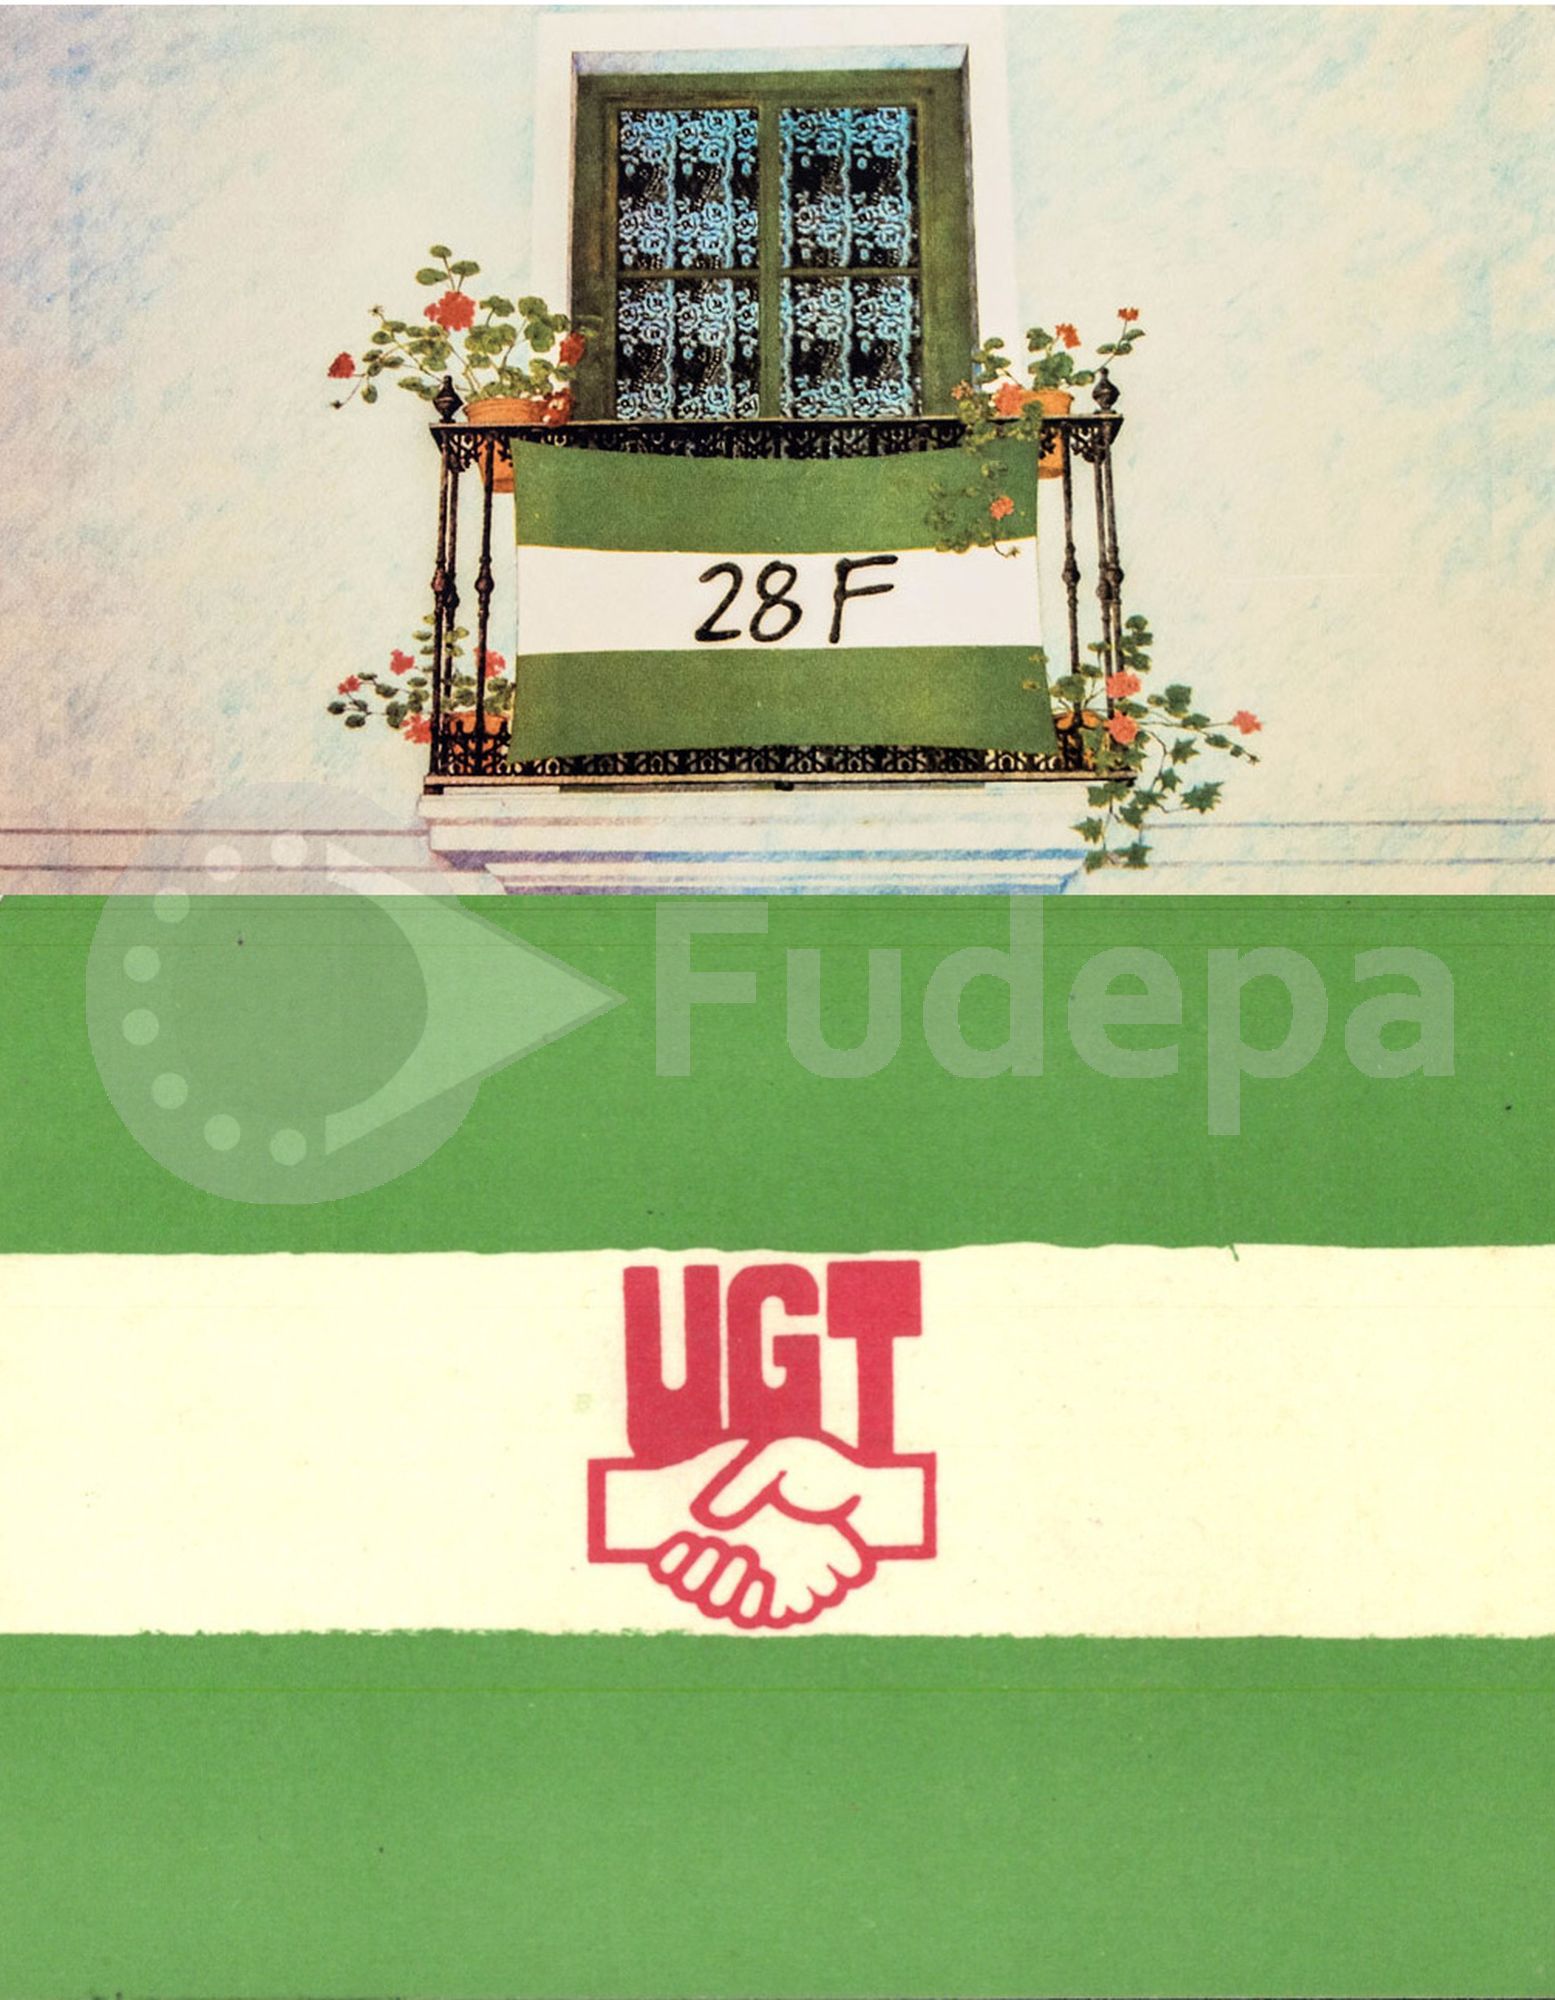 El Día de Andalucía a través de los fondos del Archivo Histórico de UGT Andalucía
(FUDEPA_AHUGTA)